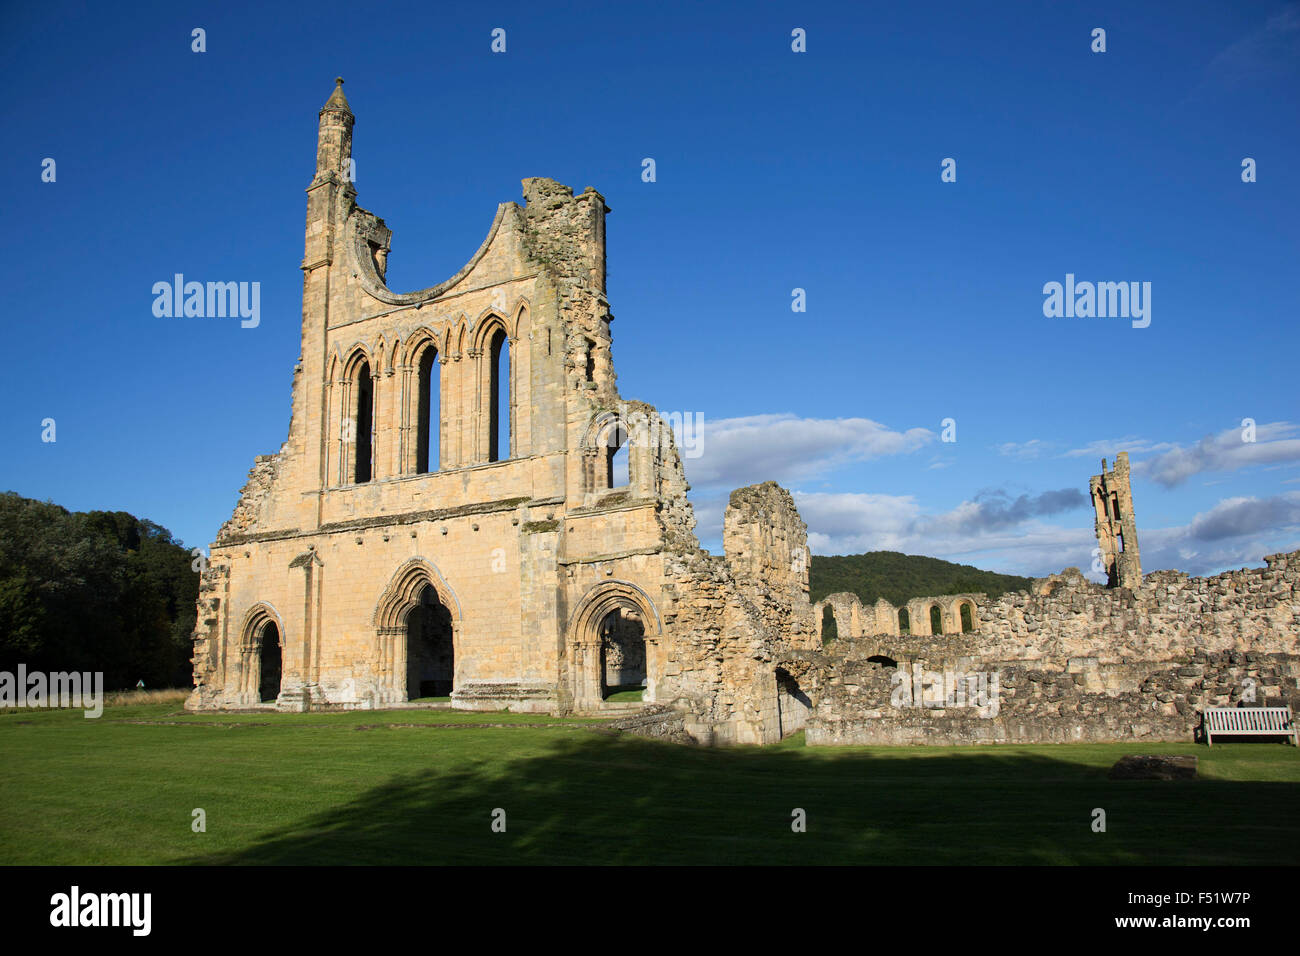 Byland Abbey, North Yorkshire, England, UK. Byland Abbey ist ein zerstörten Abtei und ein kleines Dorf in der Ryedale Bezirk North Yorkshire, England, in den North York Moors National Park. Beeindruckende Überreste können noch gesehen werden, in der Obhut von English Heritage, einschließlich der unteren Hälfte eine riesige Rosette. Es war wie eine Savigniac Abtei im Januar 1135 gegründet und wurde 1147 von den Zisterzienserorden aufgenommen. Einen leichten Einstieg für die Gemeinschaft, die fünfmal zu bewegen, bevor er sich auf neue Byland, in der Nähe von Coxwold in 1177 hatten war es nicht. Stockfoto